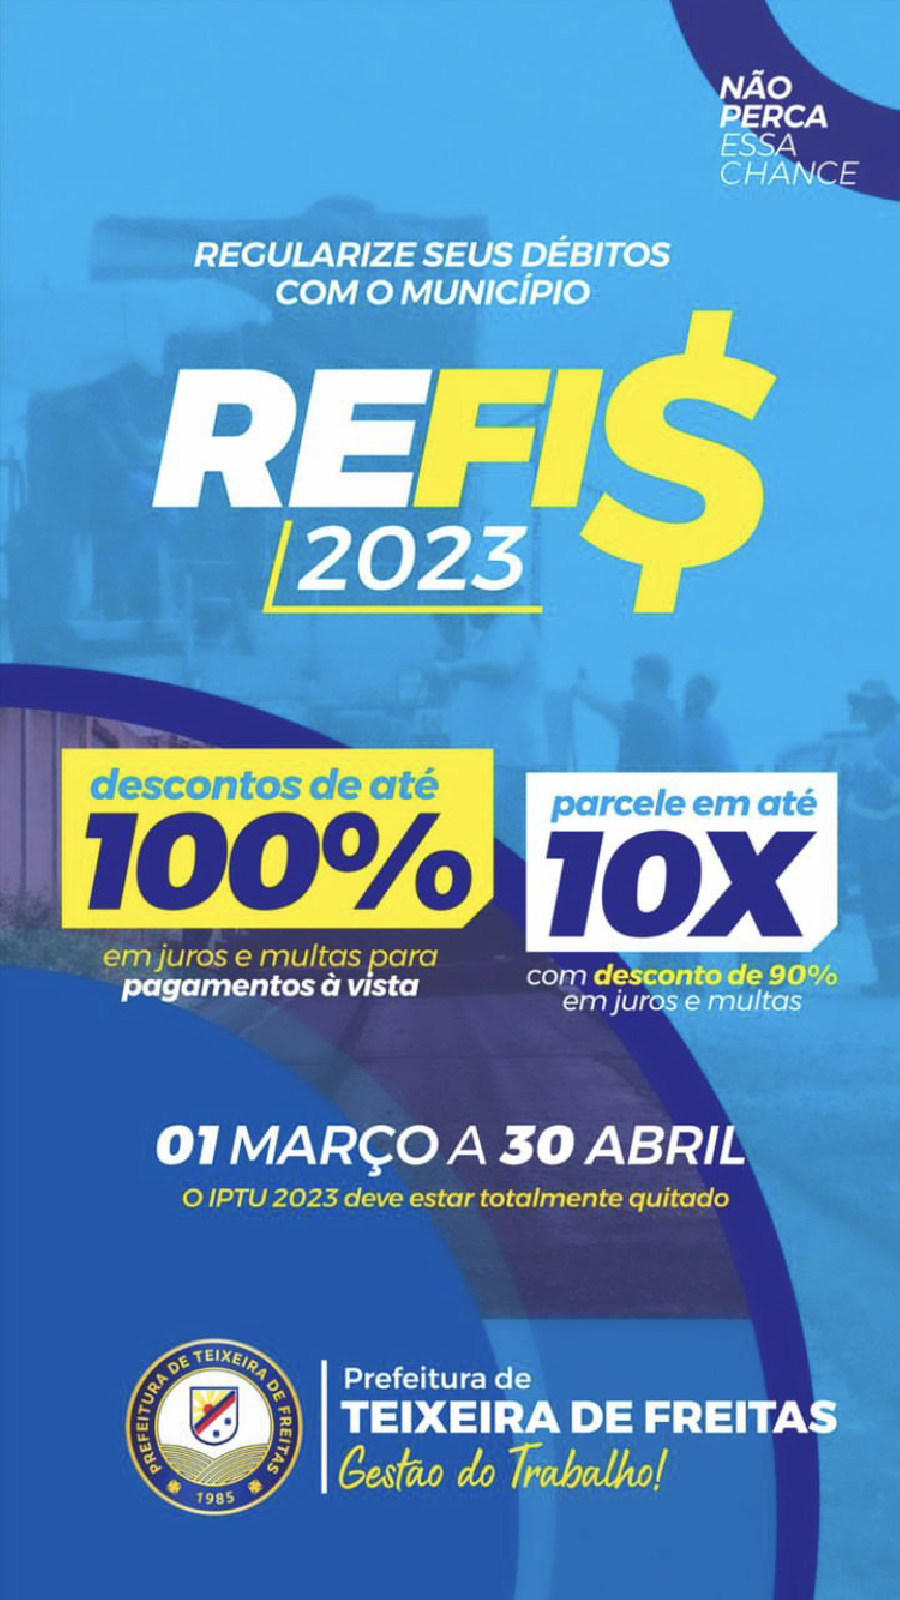 REFIS 2023: concessão de desconto para regularização de débitos com o município vai até o dia 30 de abril; saiba mais